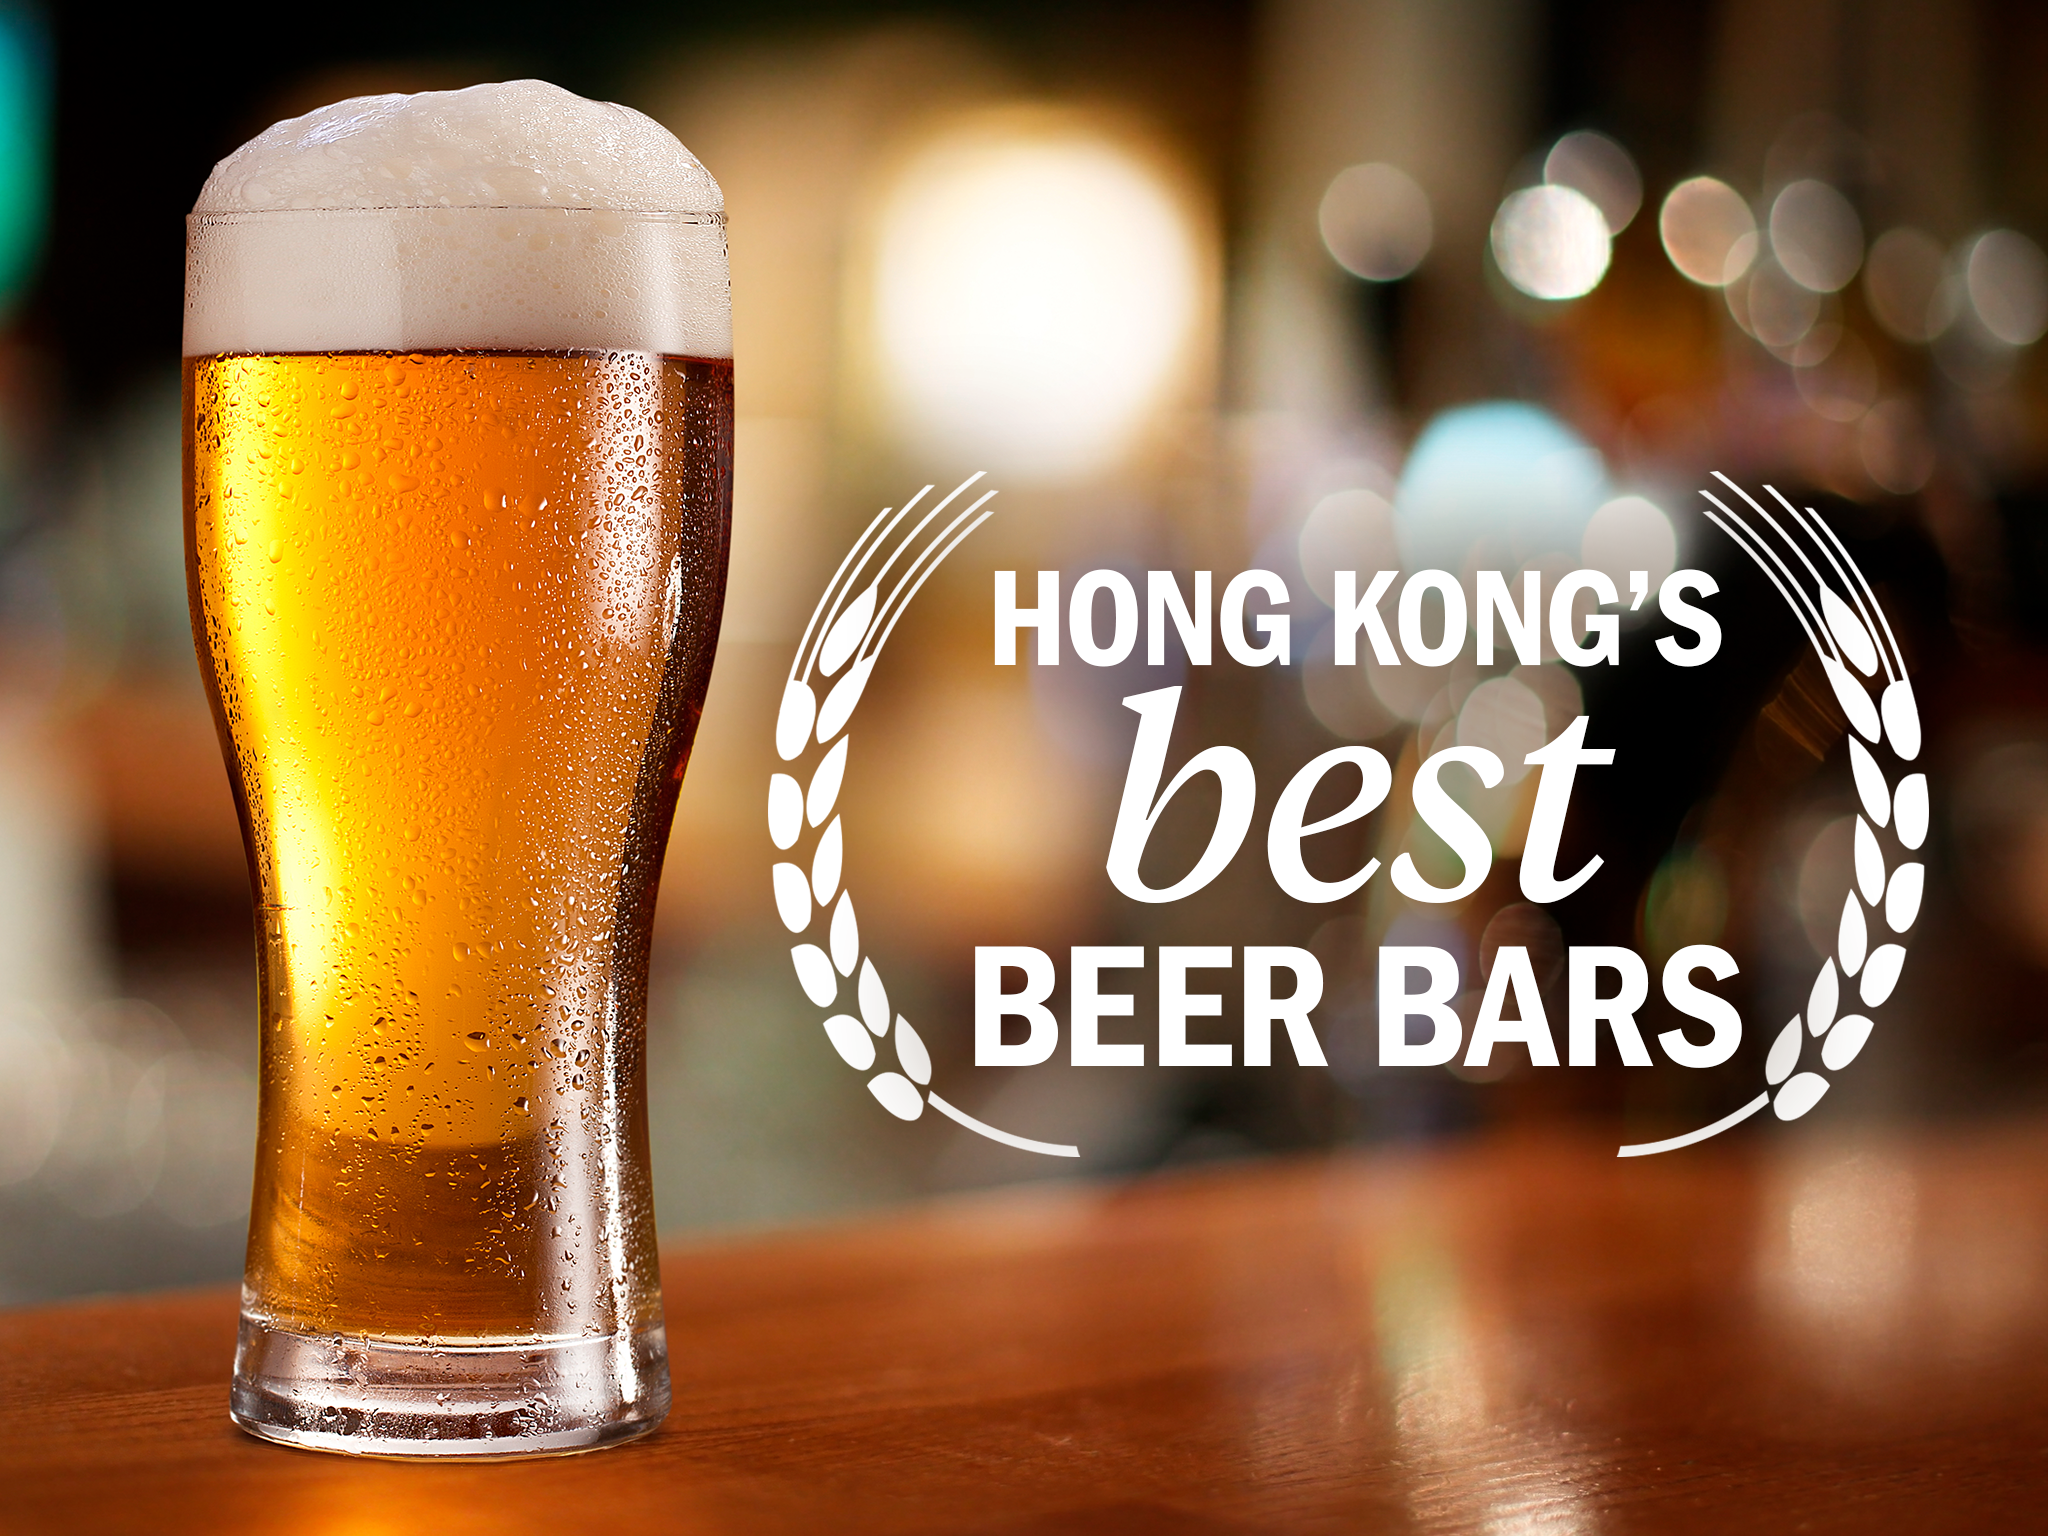 Hong Kong’s best beer bars